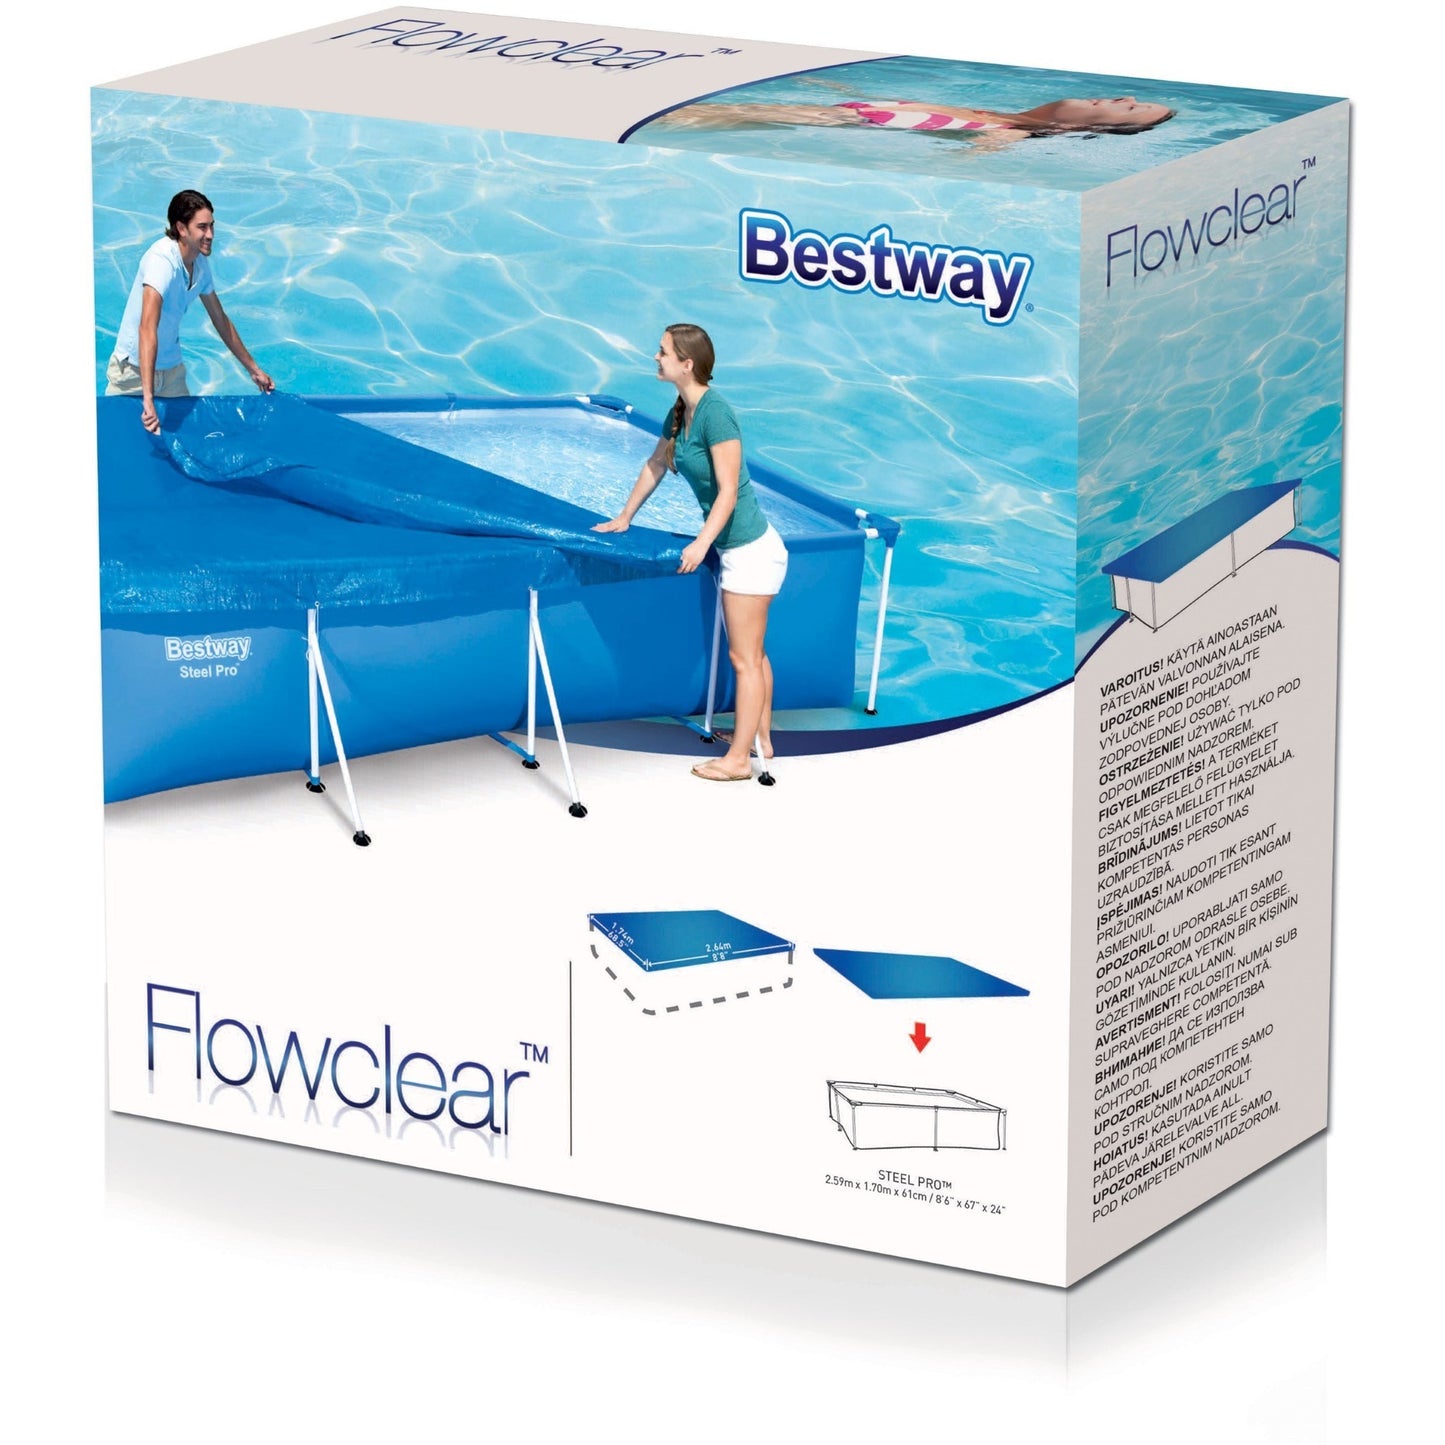 Bestway Flowclear cover steel pro rechthoek 259